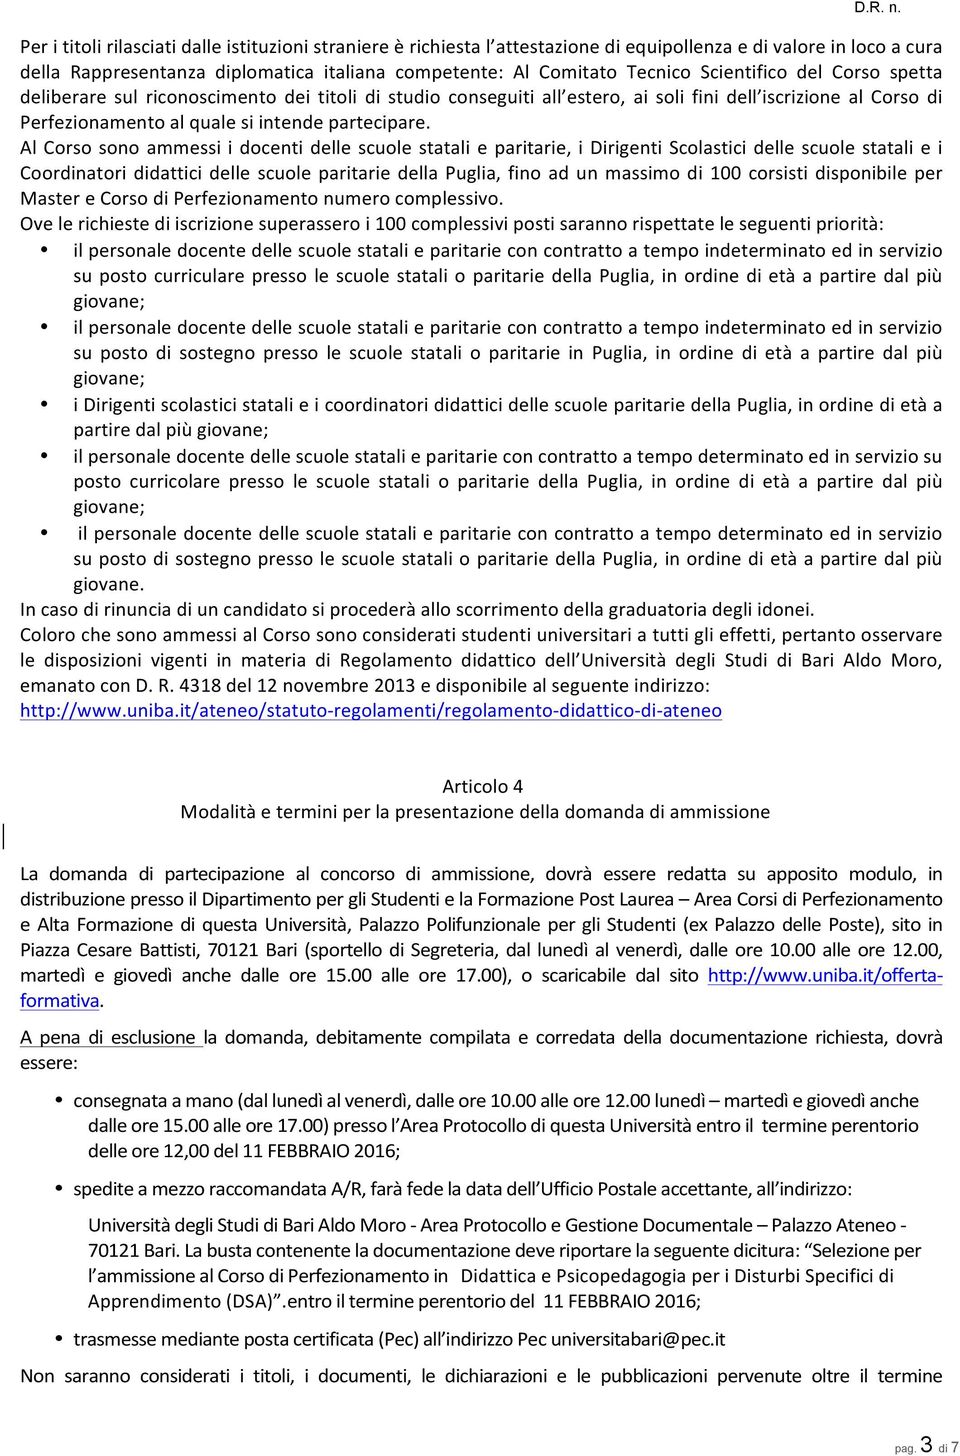 Al Corso sono ammessi i docenti delle scuole statali e paritarie, i Dirigenti Scolastici delle scuole statali e i Coordinatori didattici delle scuole paritarie della Puglia, fino ad un massimo di 100